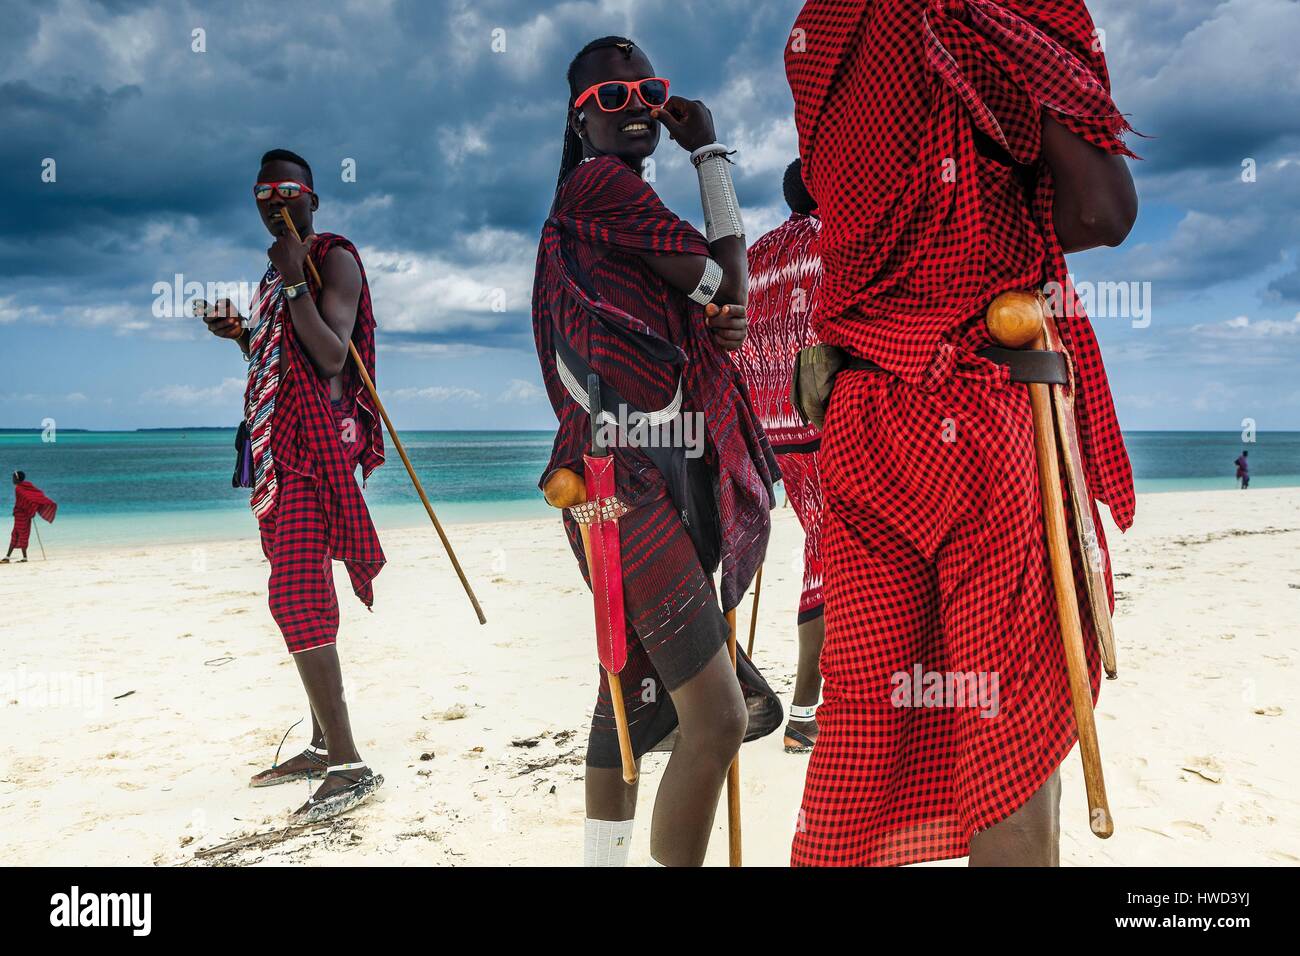 Tanzania, Zanzibar, Kendwa, Masai group seafront Stock Photo